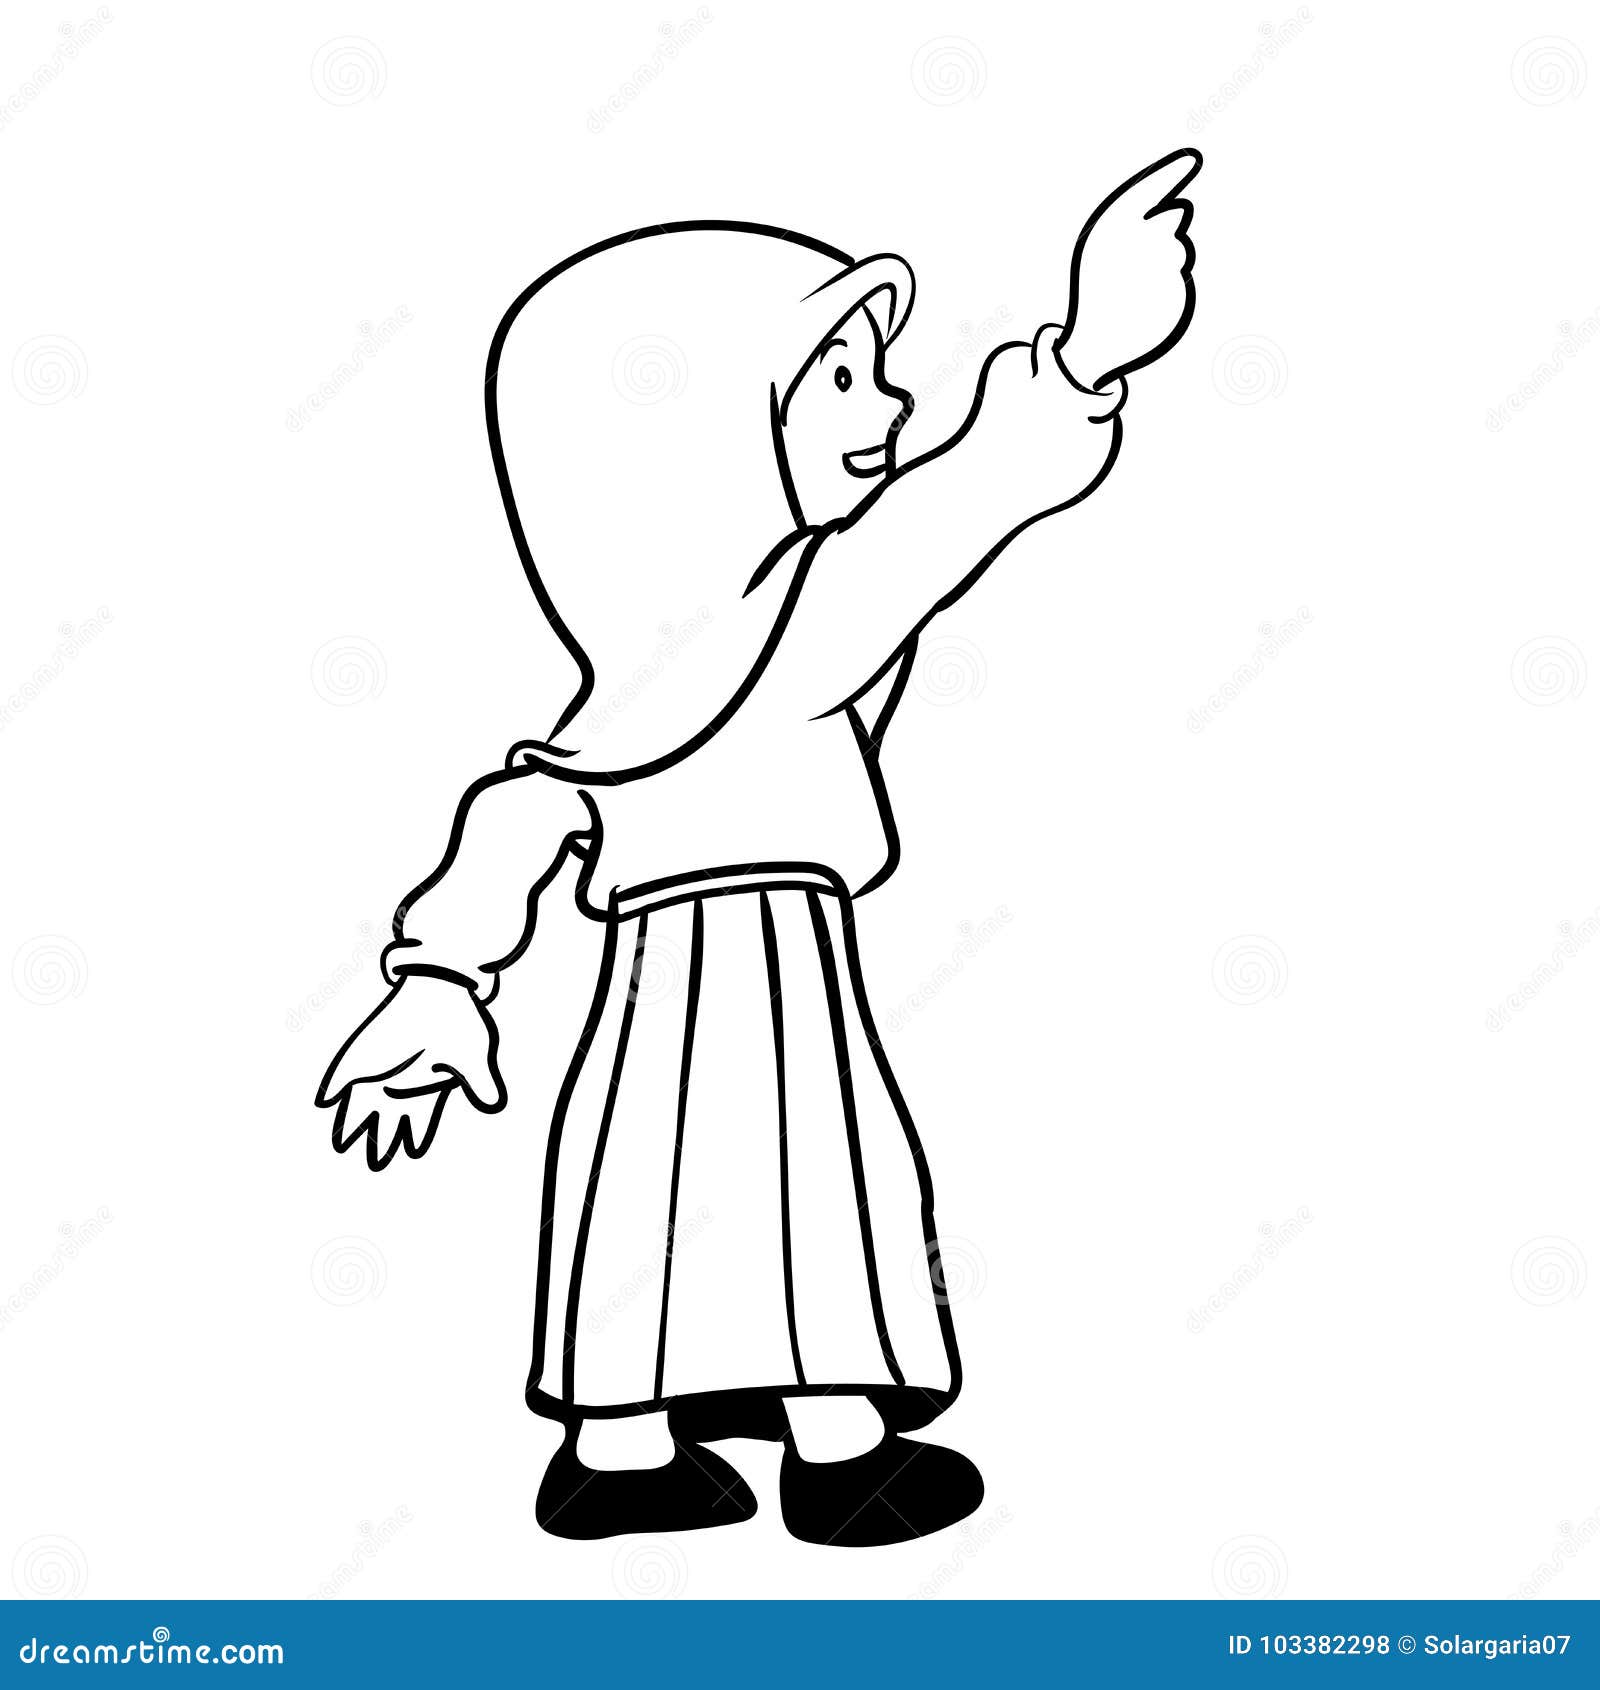 Download Cartoon Hand Pointing Vector Illustration | CartoonDealer ...